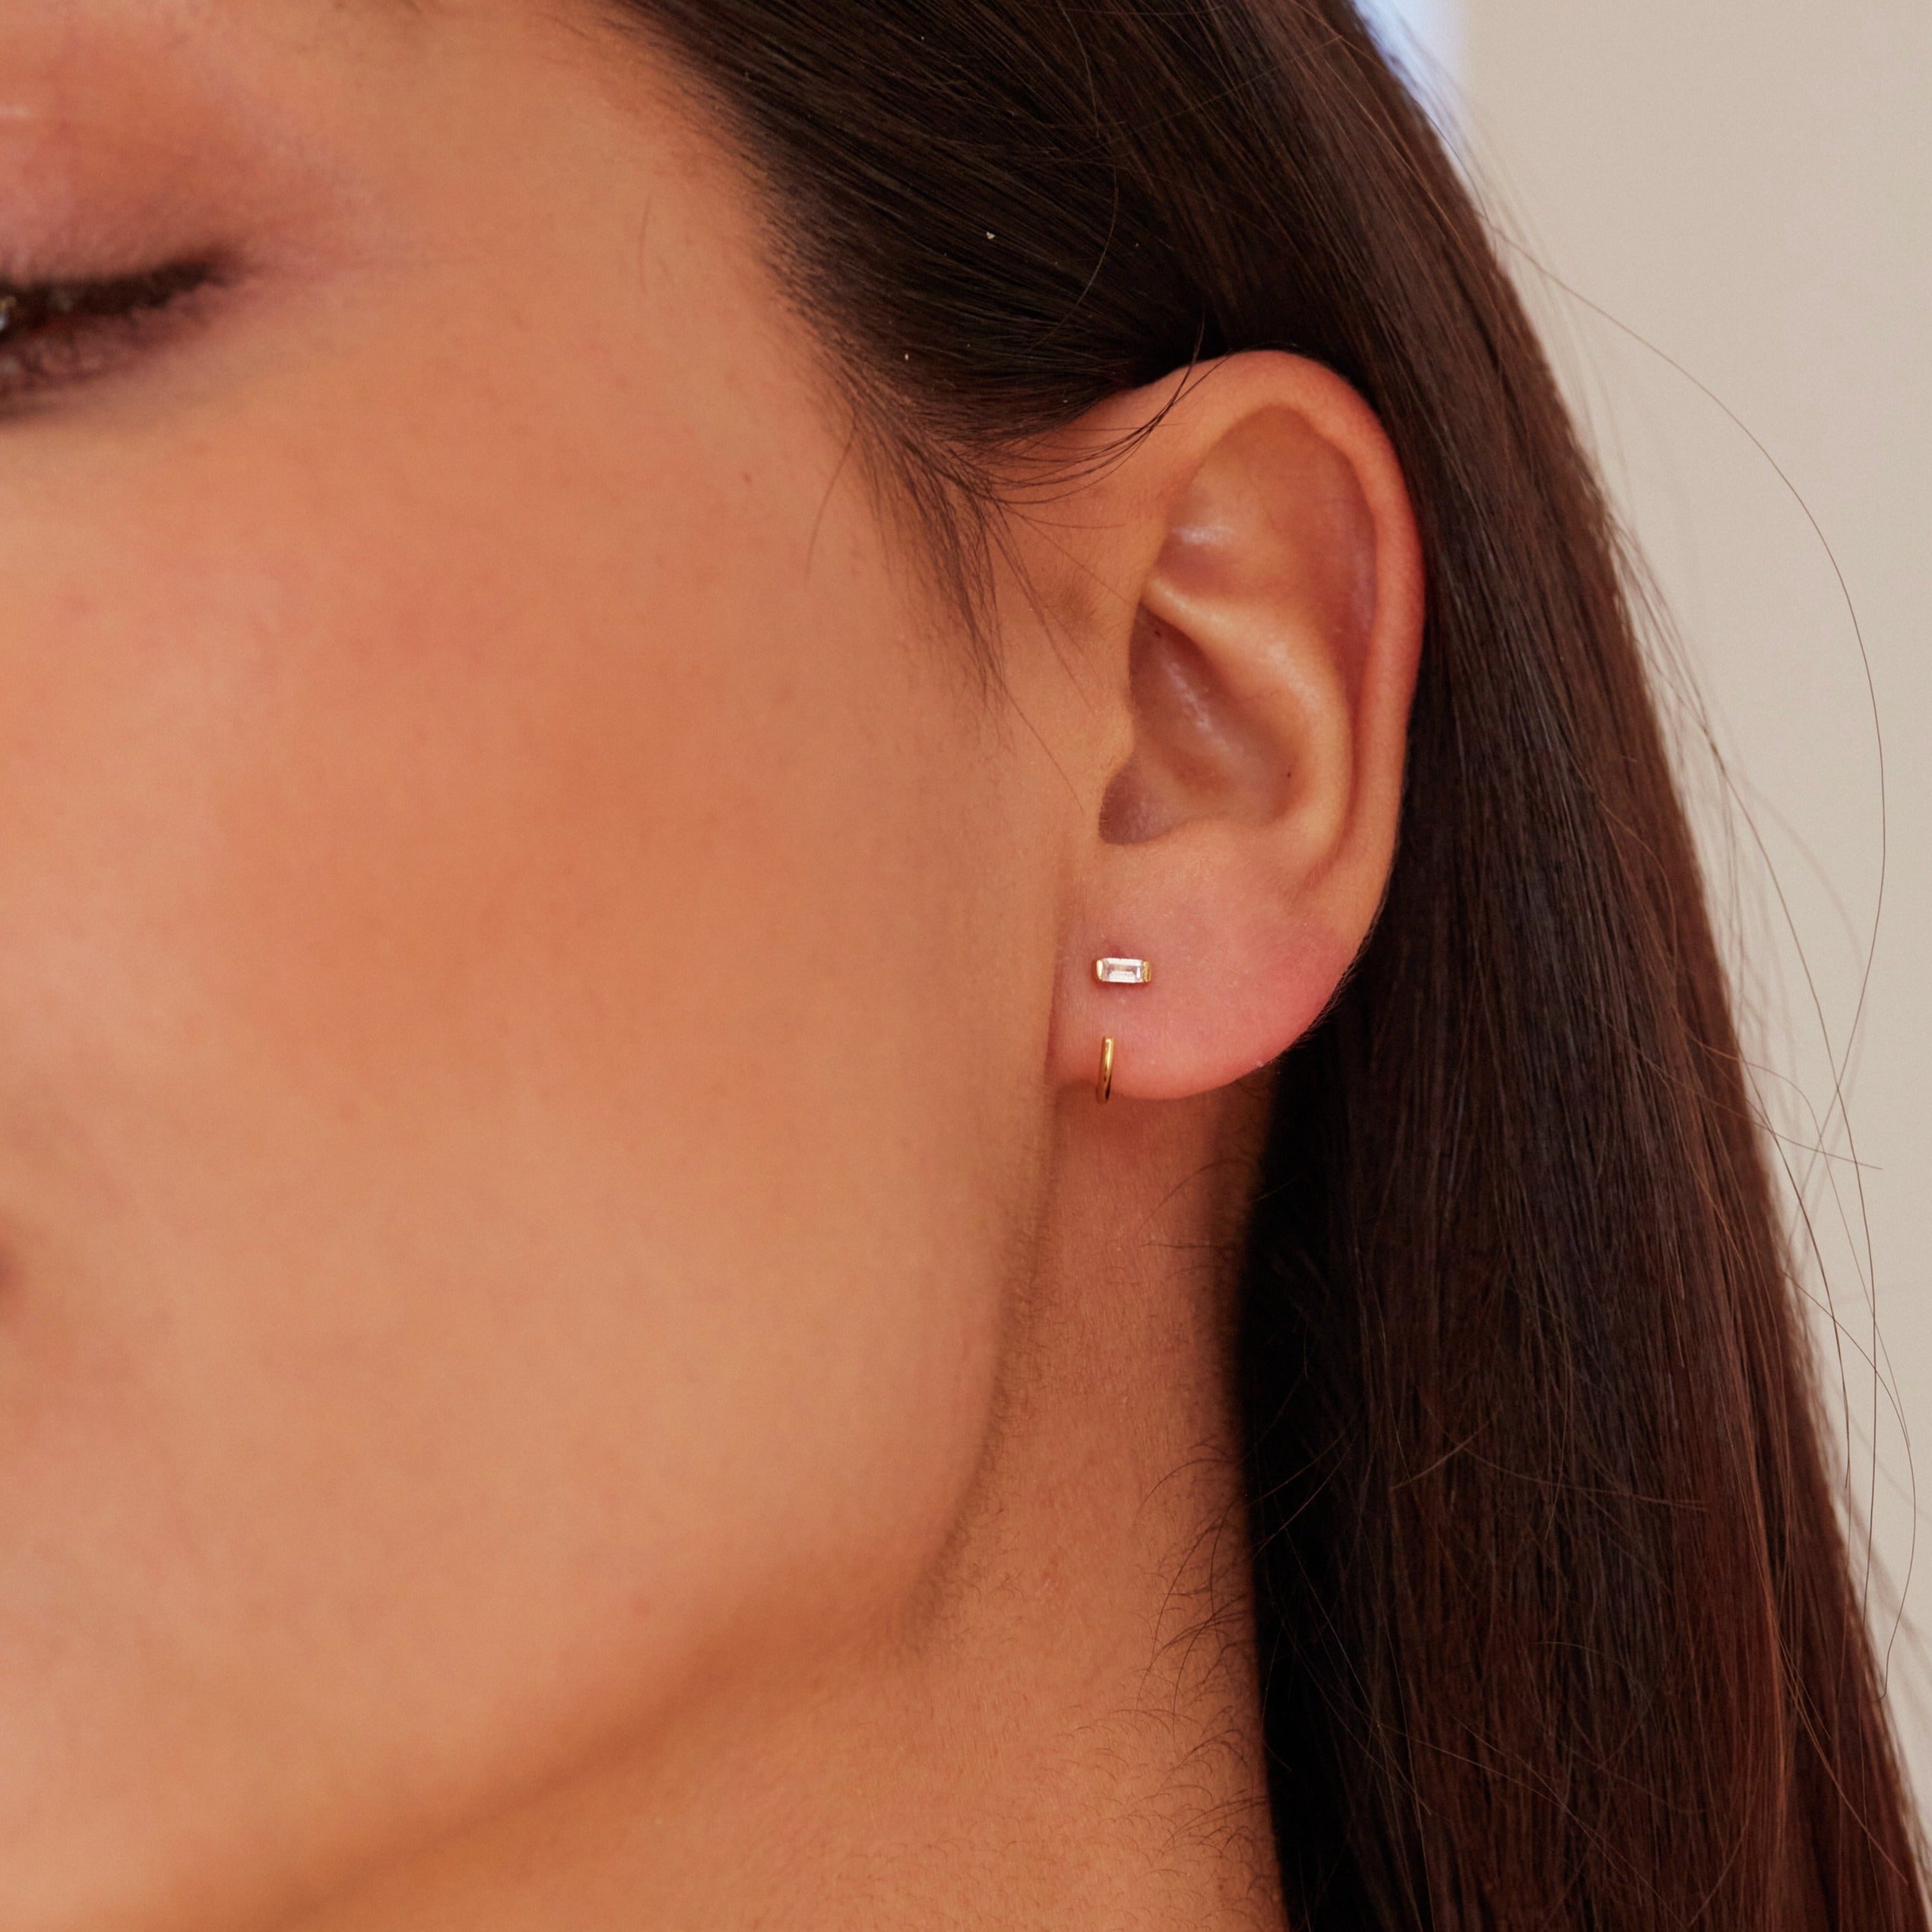 Gold diamond style baguette lobe hoop earring in one ear lobe of a brunette woman